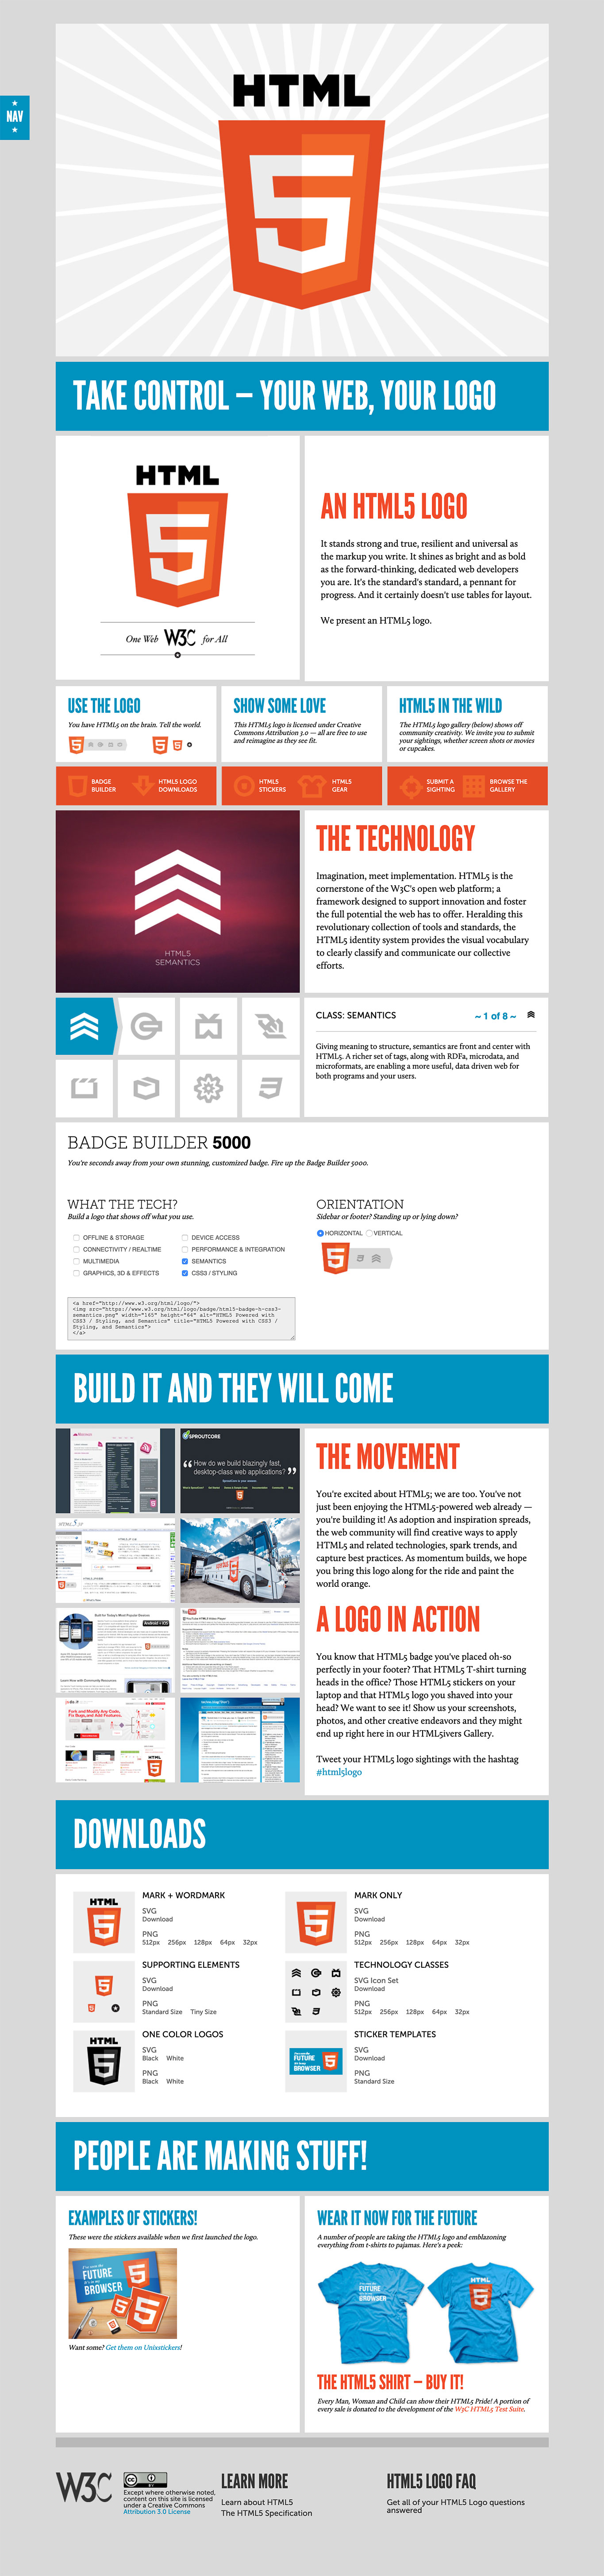 HTML 5 website image